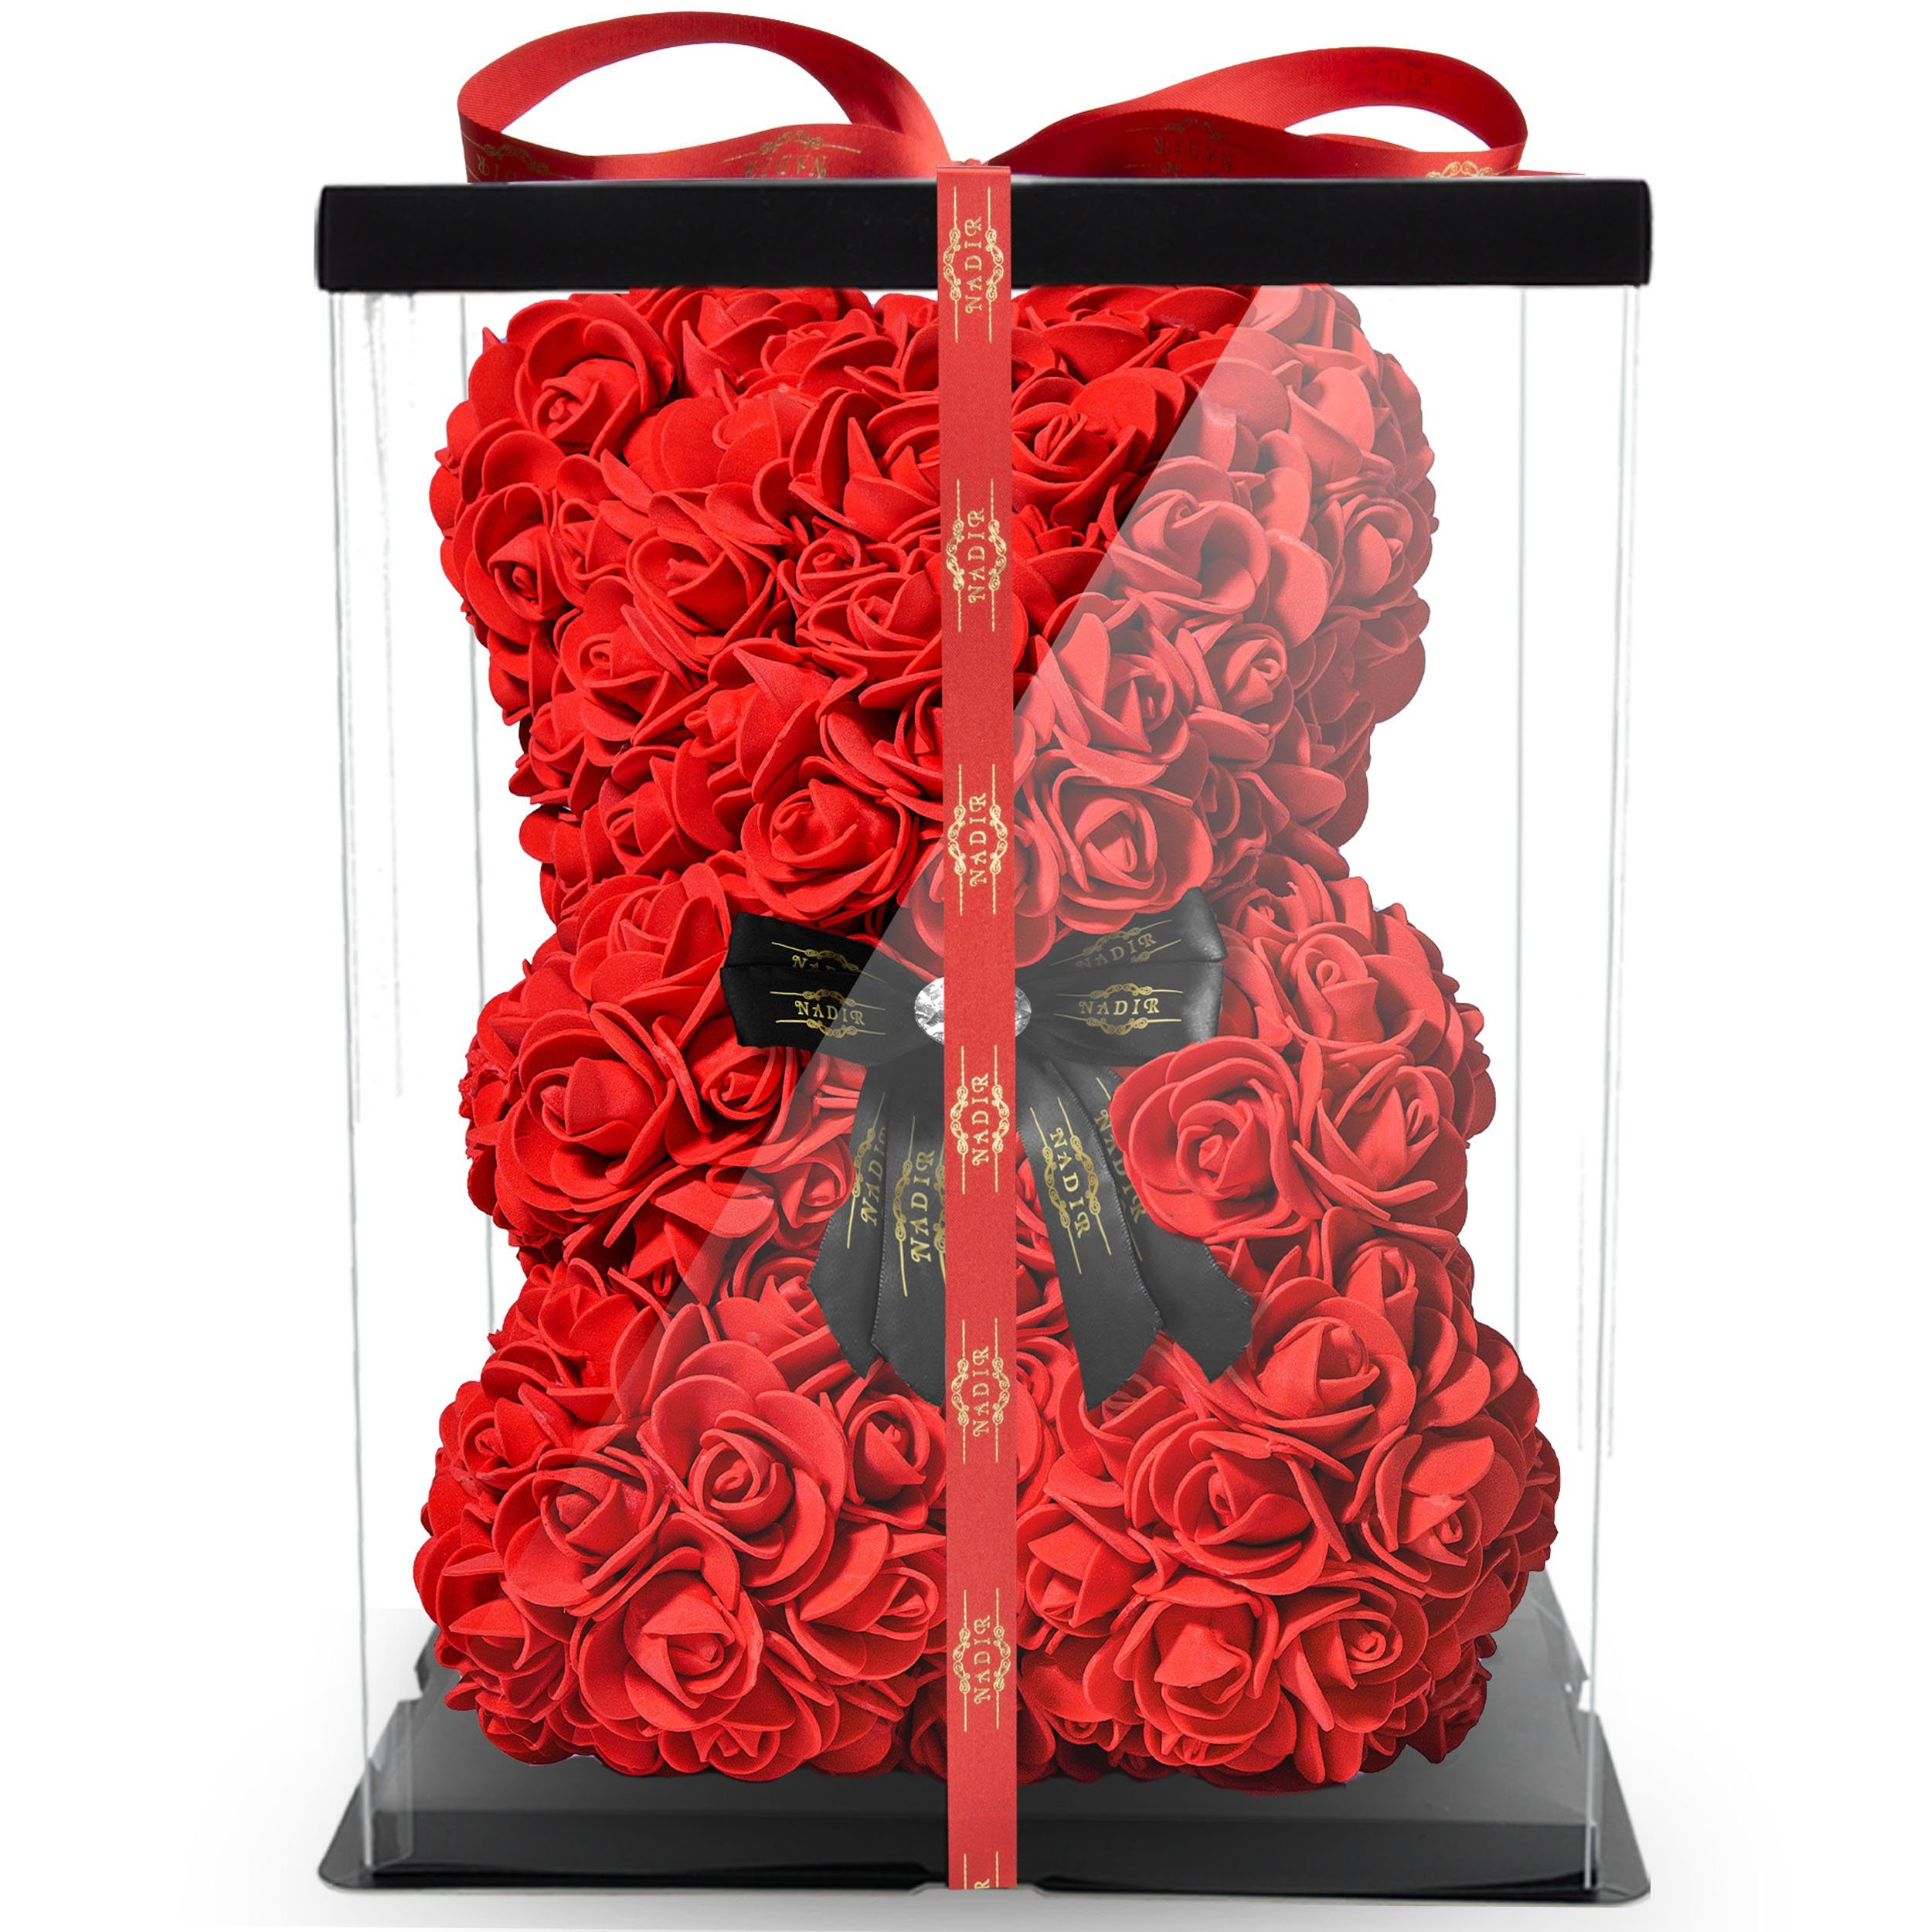 Details about   25CM Rose Flower Bear Geschenkbox Teddybär Valentinstag Geburtstagsgeschenk DE 